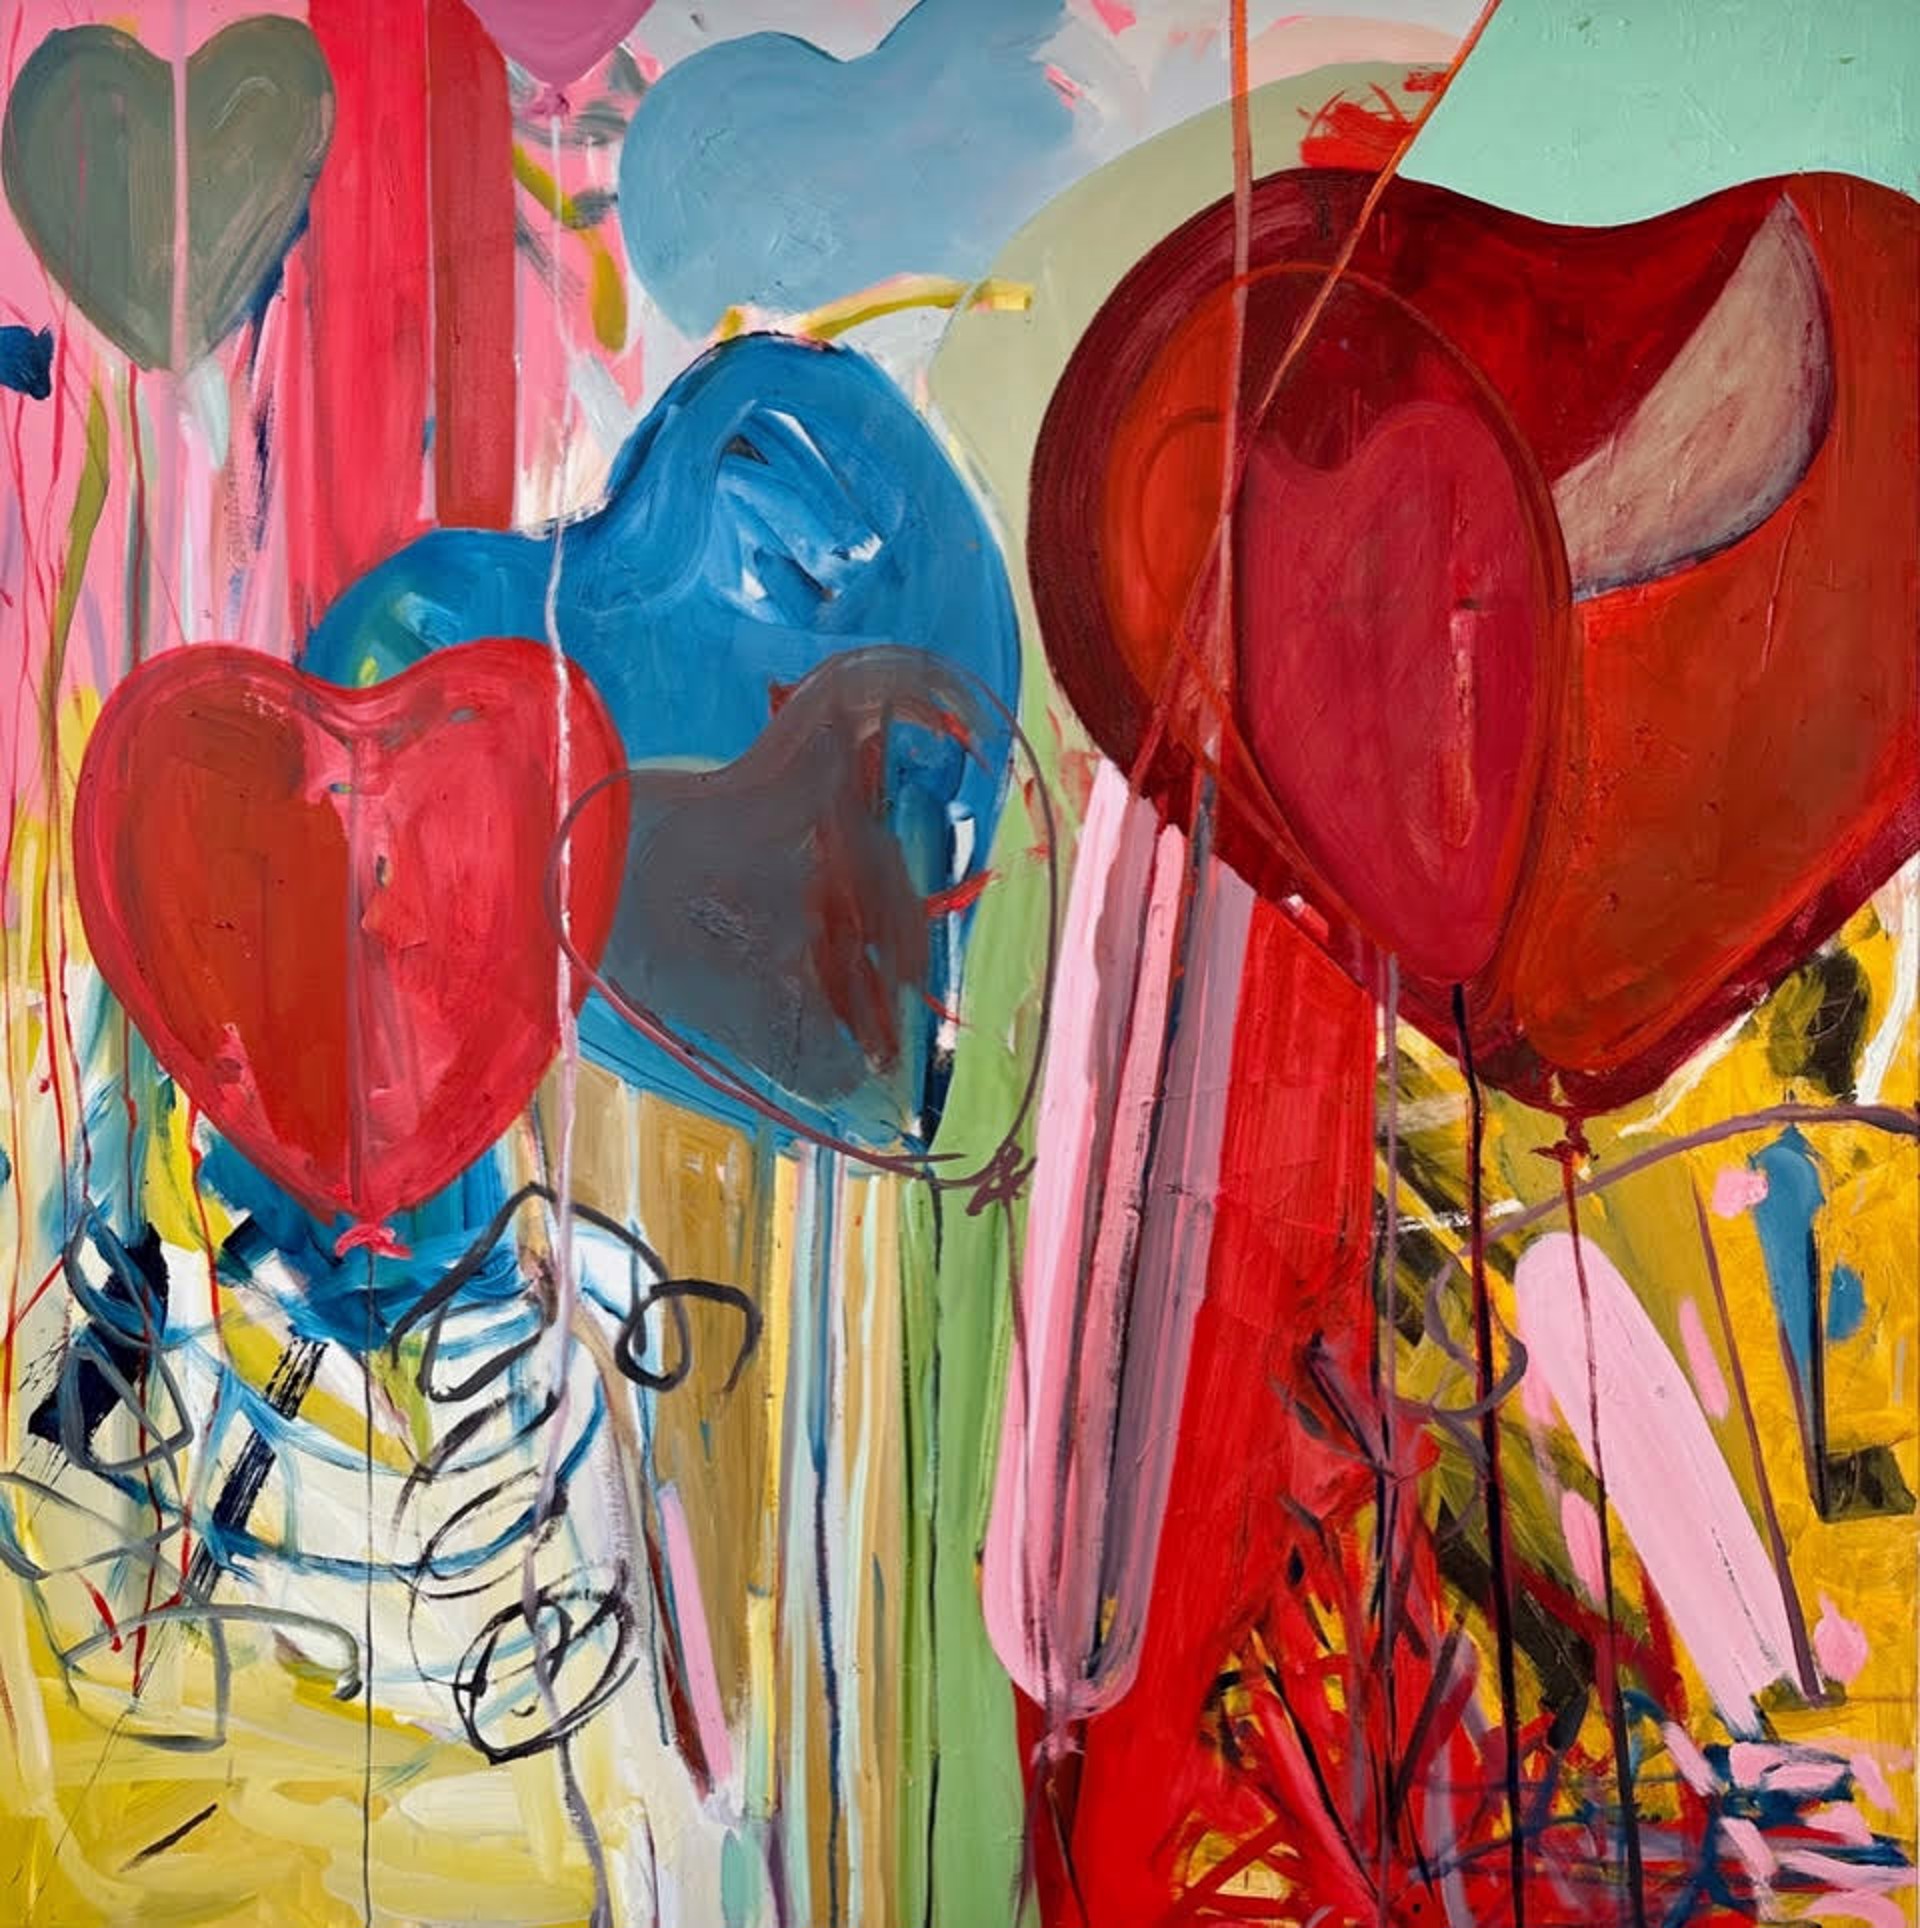 Heart Balloons by Diana Delgado